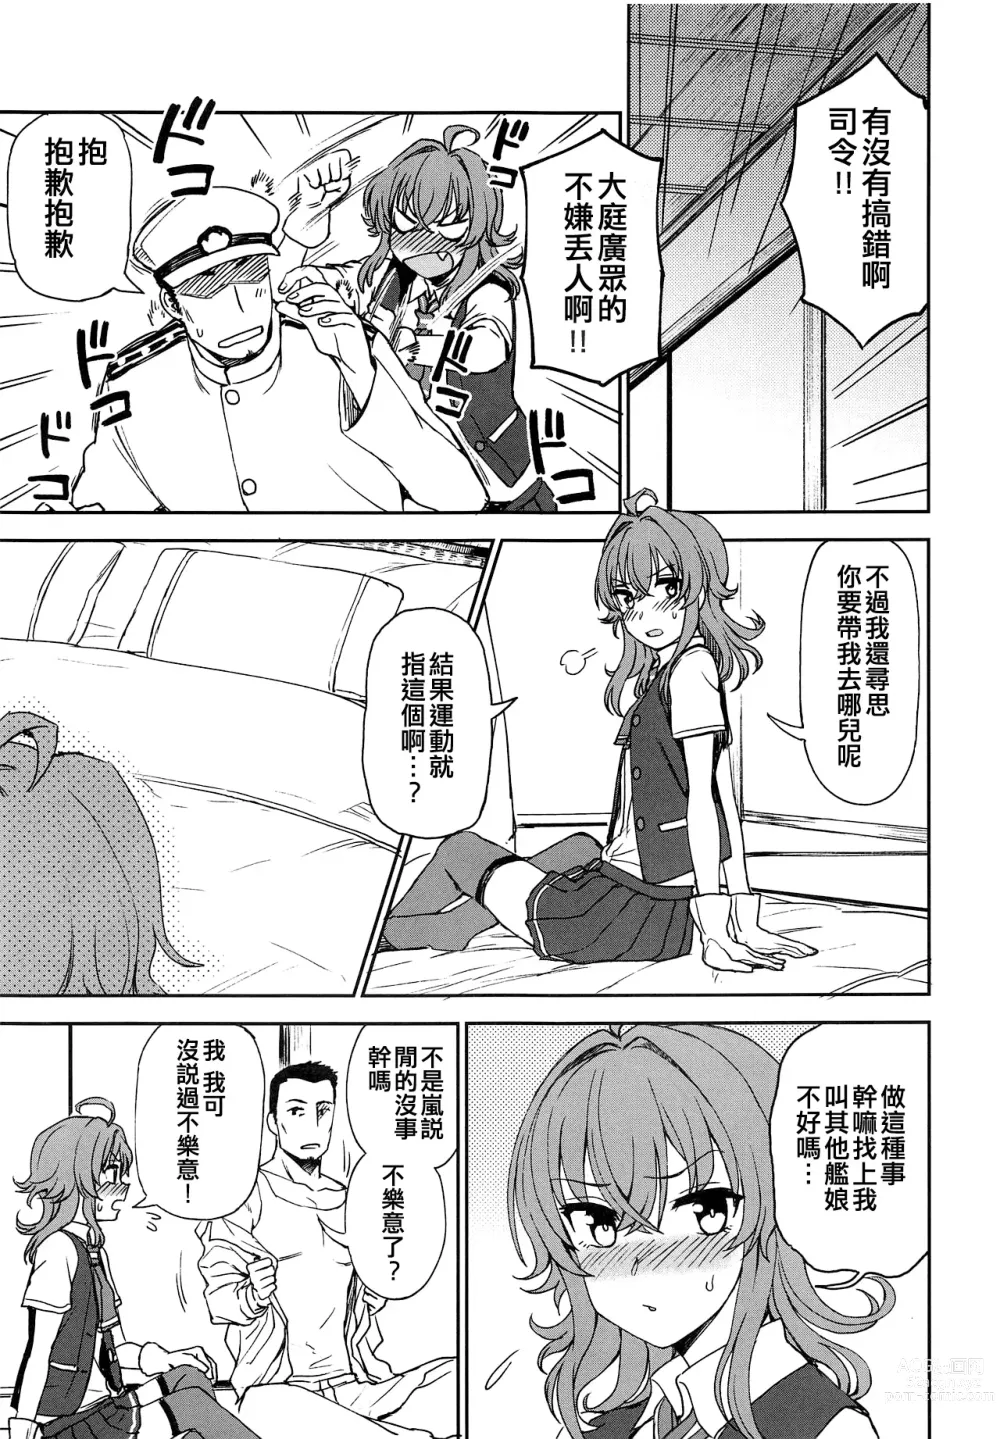 Page 5 of doujinshi Haru no Arashi